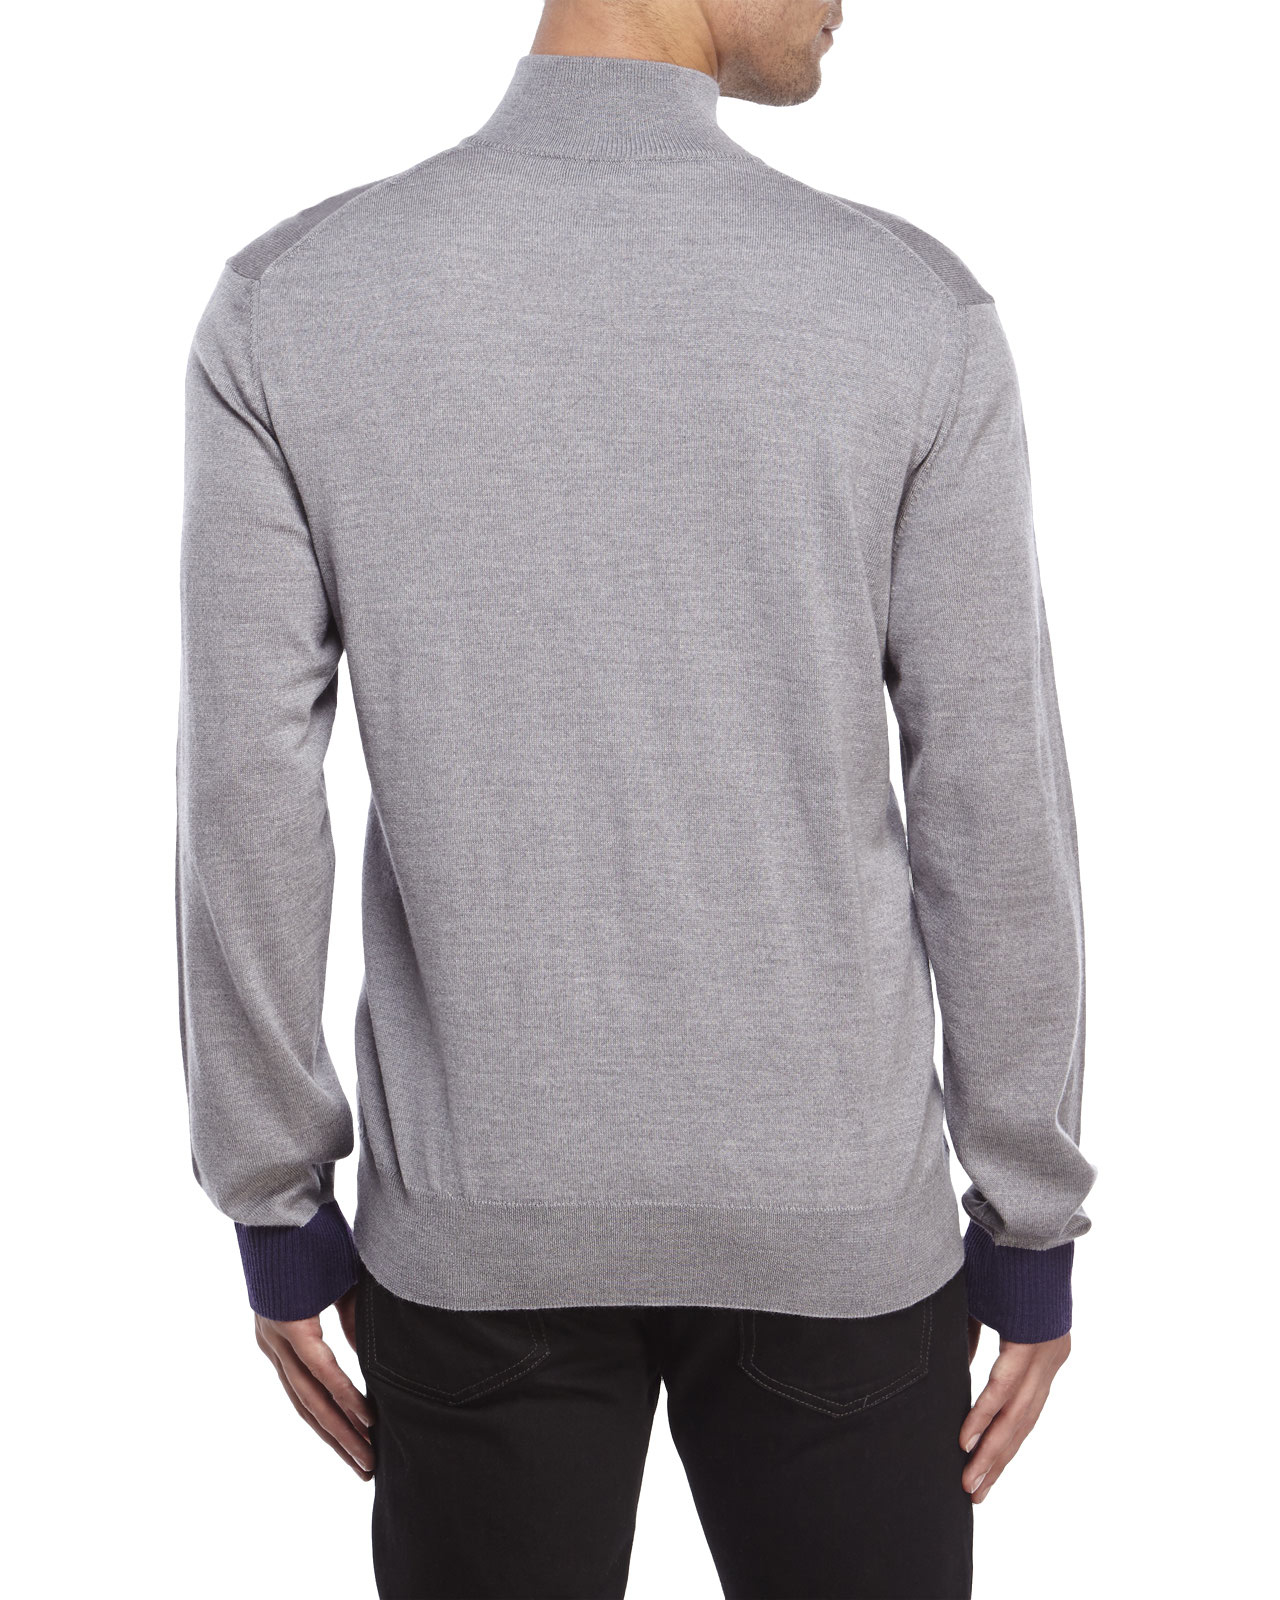 Lyst - Psycho bunny Quarter-Zip Sweater in Gray for Men